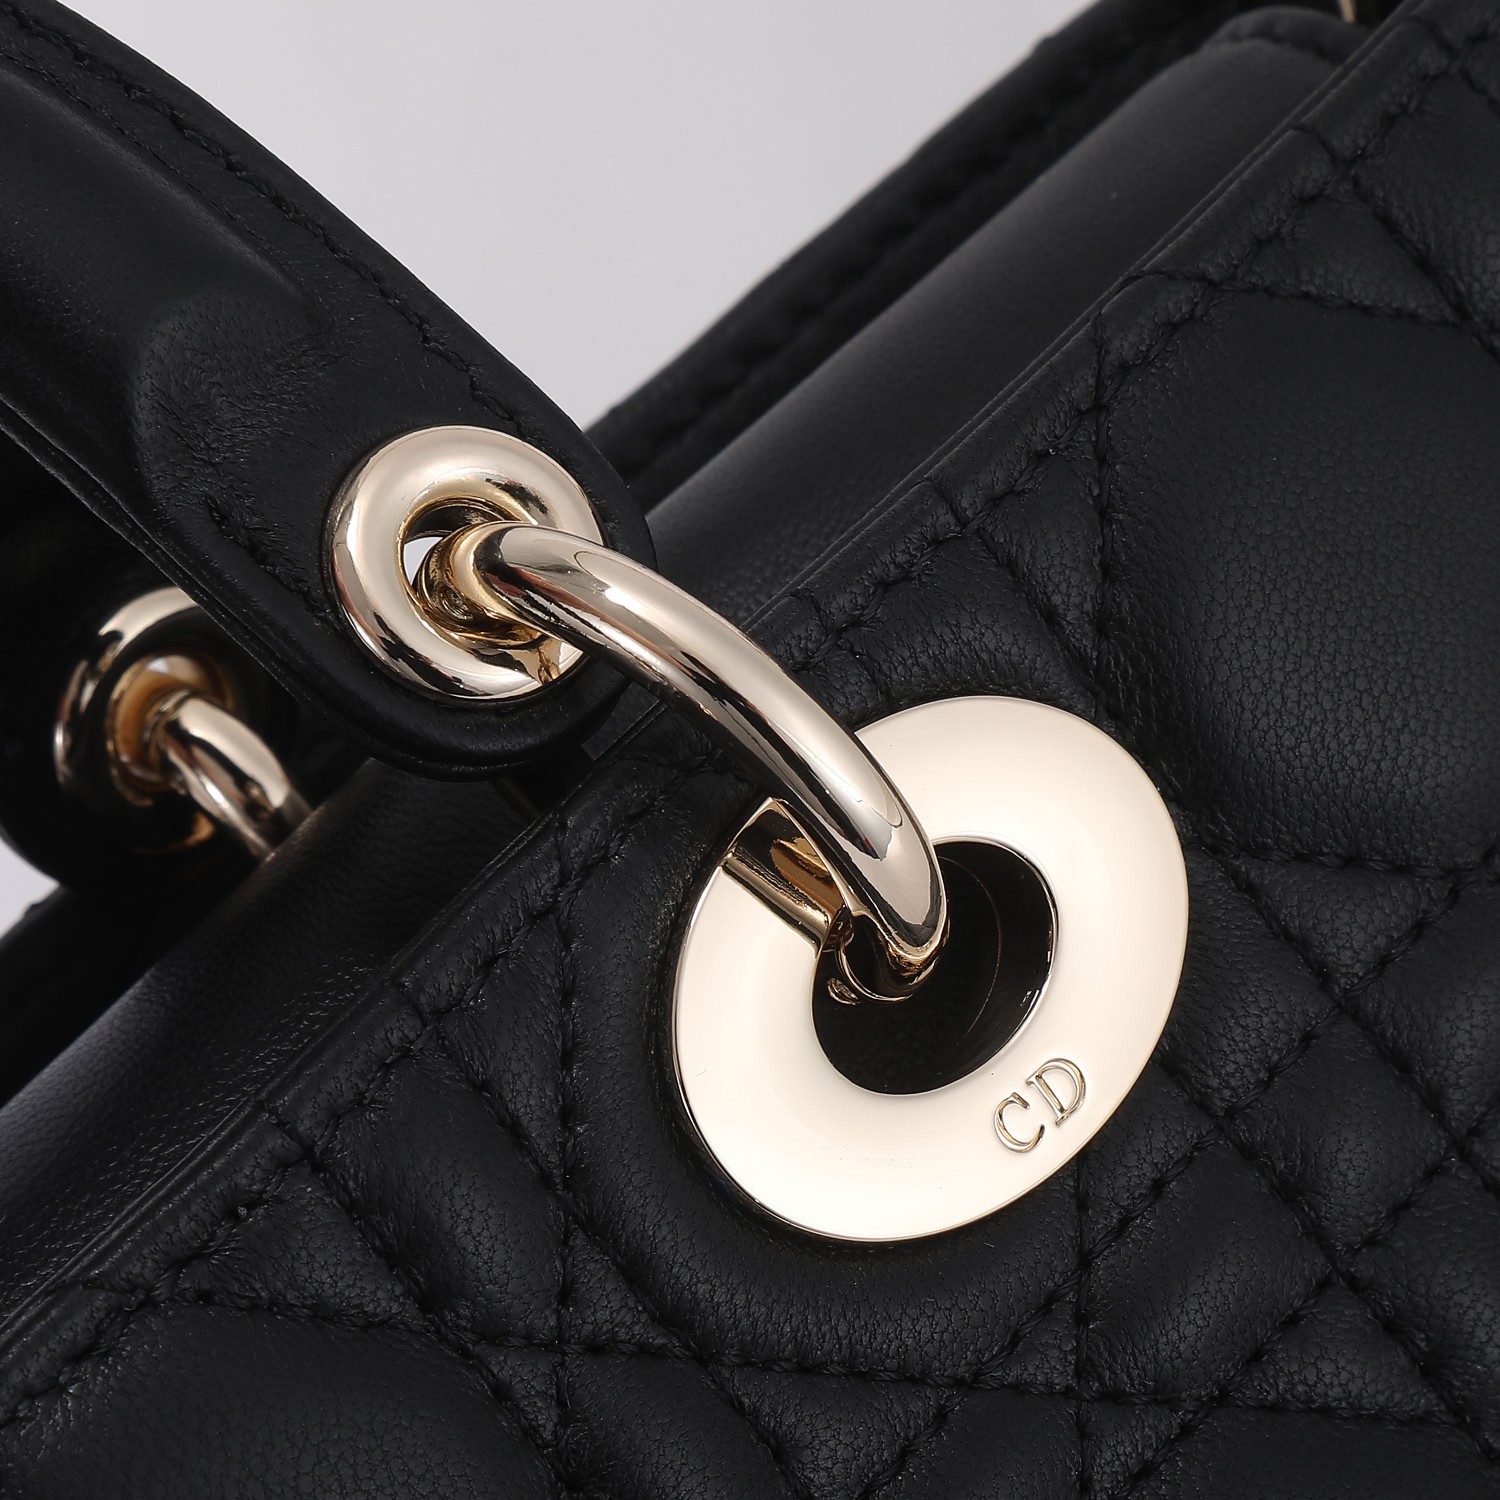 迪奥Dior顶级进口原厂皮戴妃包横款LadyD-Joy手袋凸显r系列标志性的简约美学体现了Dior对优雅